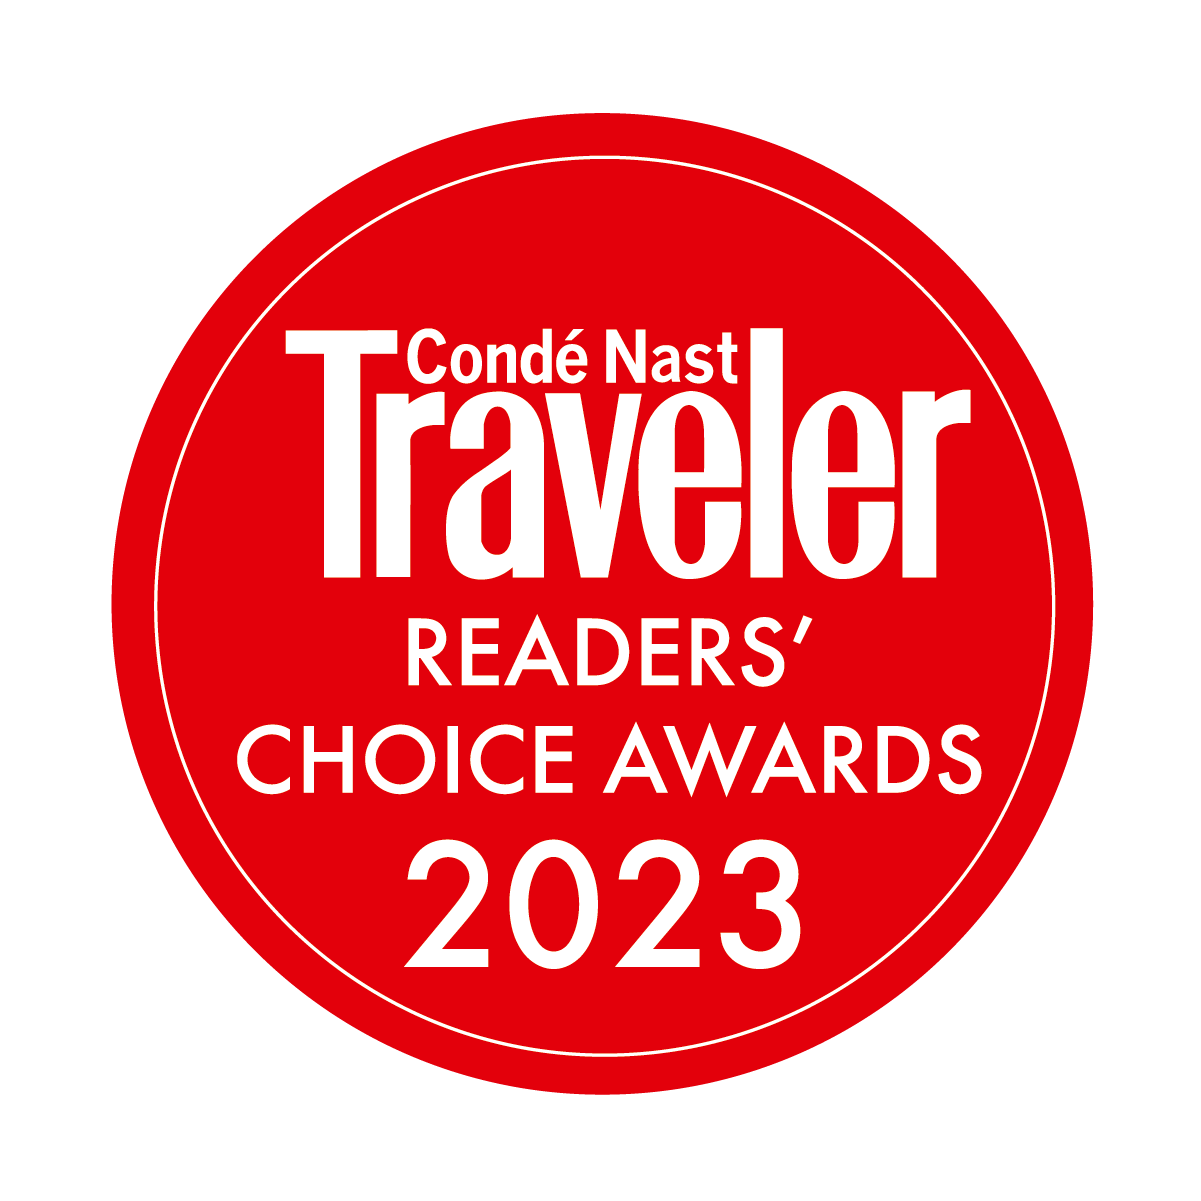 Conde Nast Traveler Readers' Choice Award 2023 logo